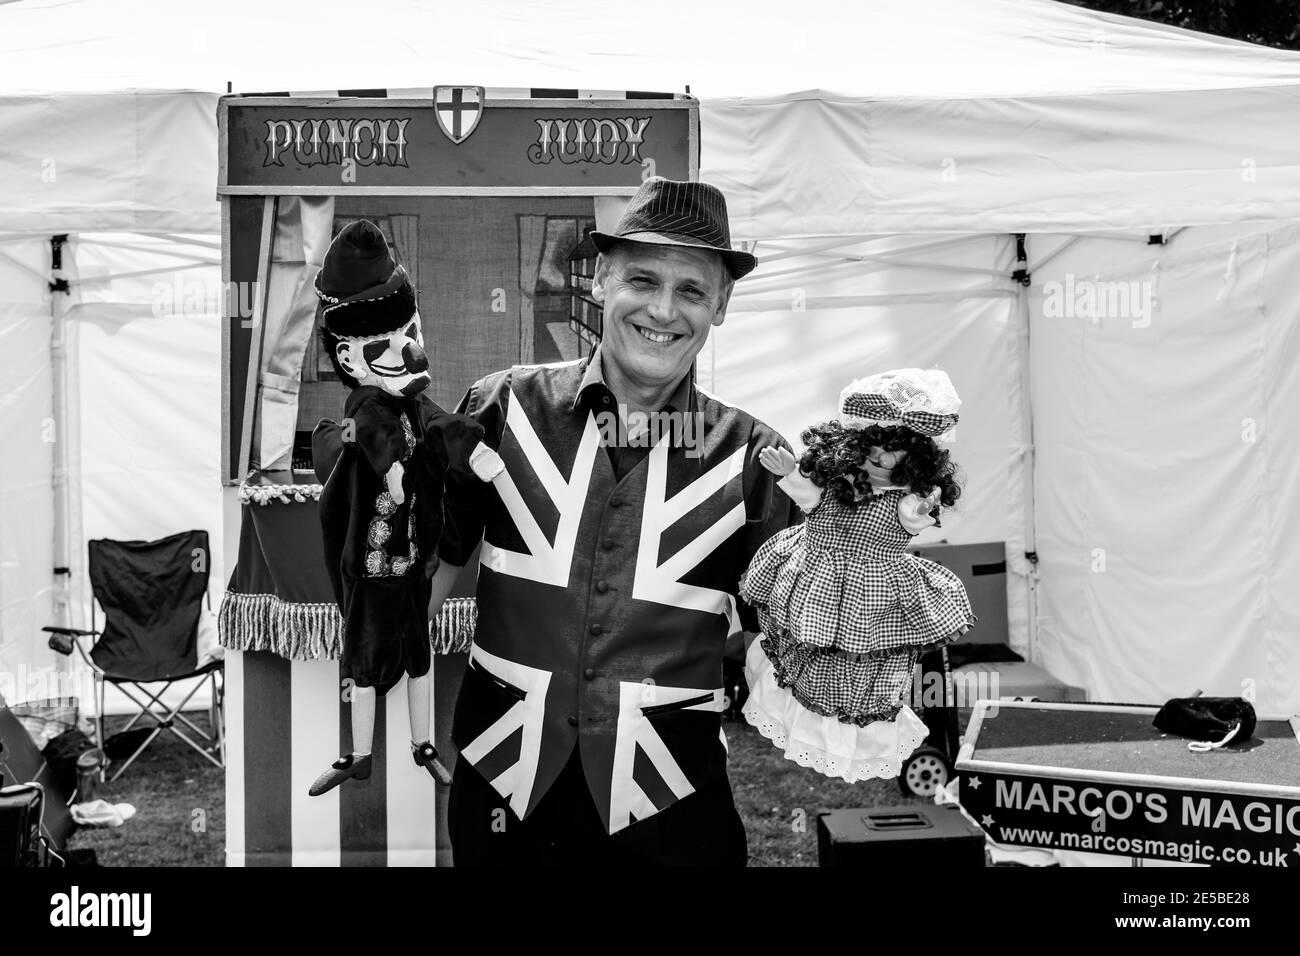 Der Kinderunterhalter „Marco ‘MMagic“ posiert mit seinen Punch- und Judy-Puppets im Fairwarp Village Fete, Fairwarp, East Sussex, Großbritannien. Stockfoto